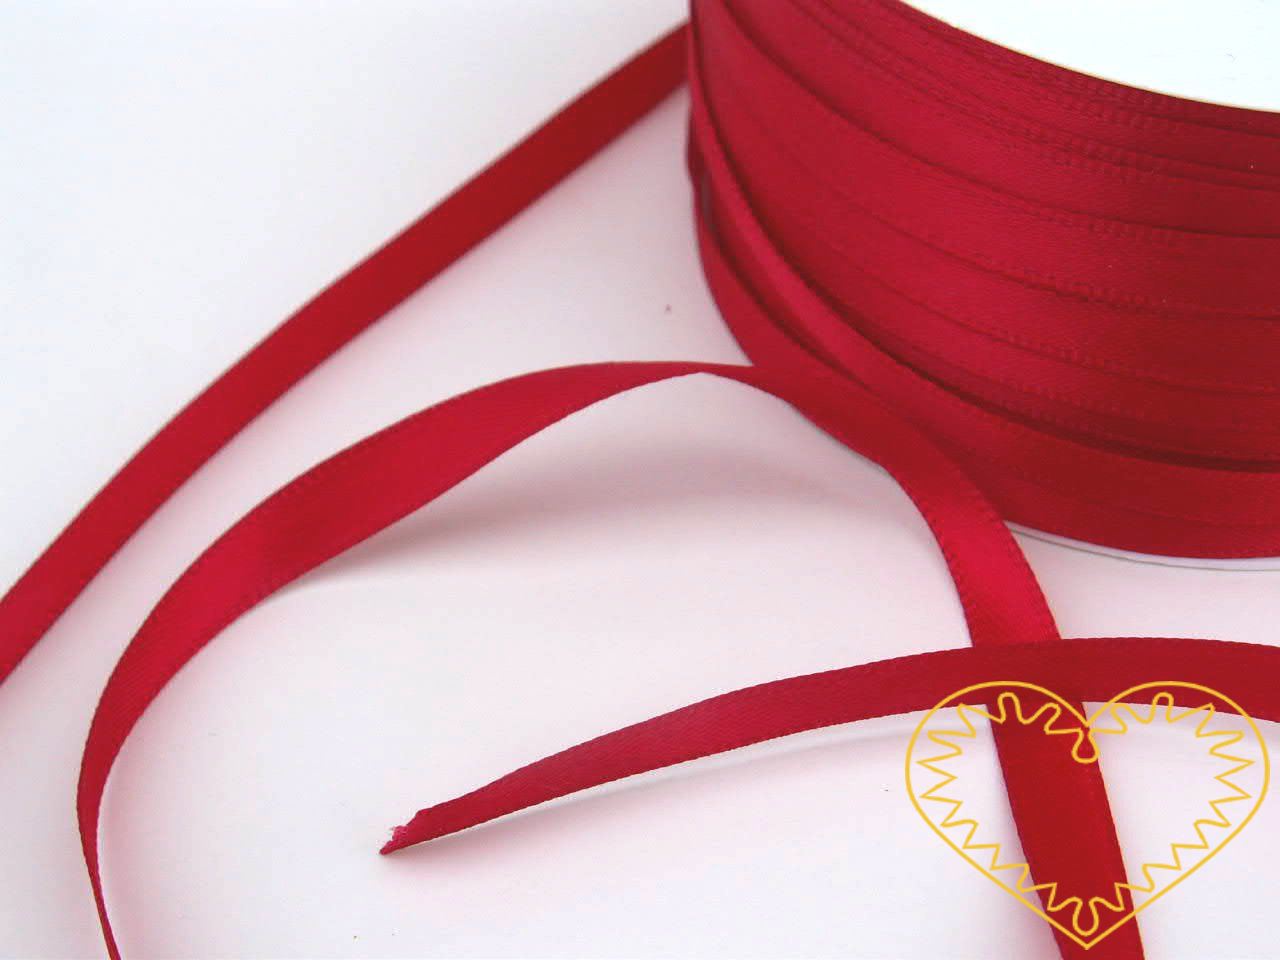 Stuha atlasová (saténová) červená - šíře 5 mm; oboulící. Vyznačuje se vysokou kvalitou a leskem. Má široké využítí při tvorbě dekorací, aranžování, balení dárků, v bytovém textilu.